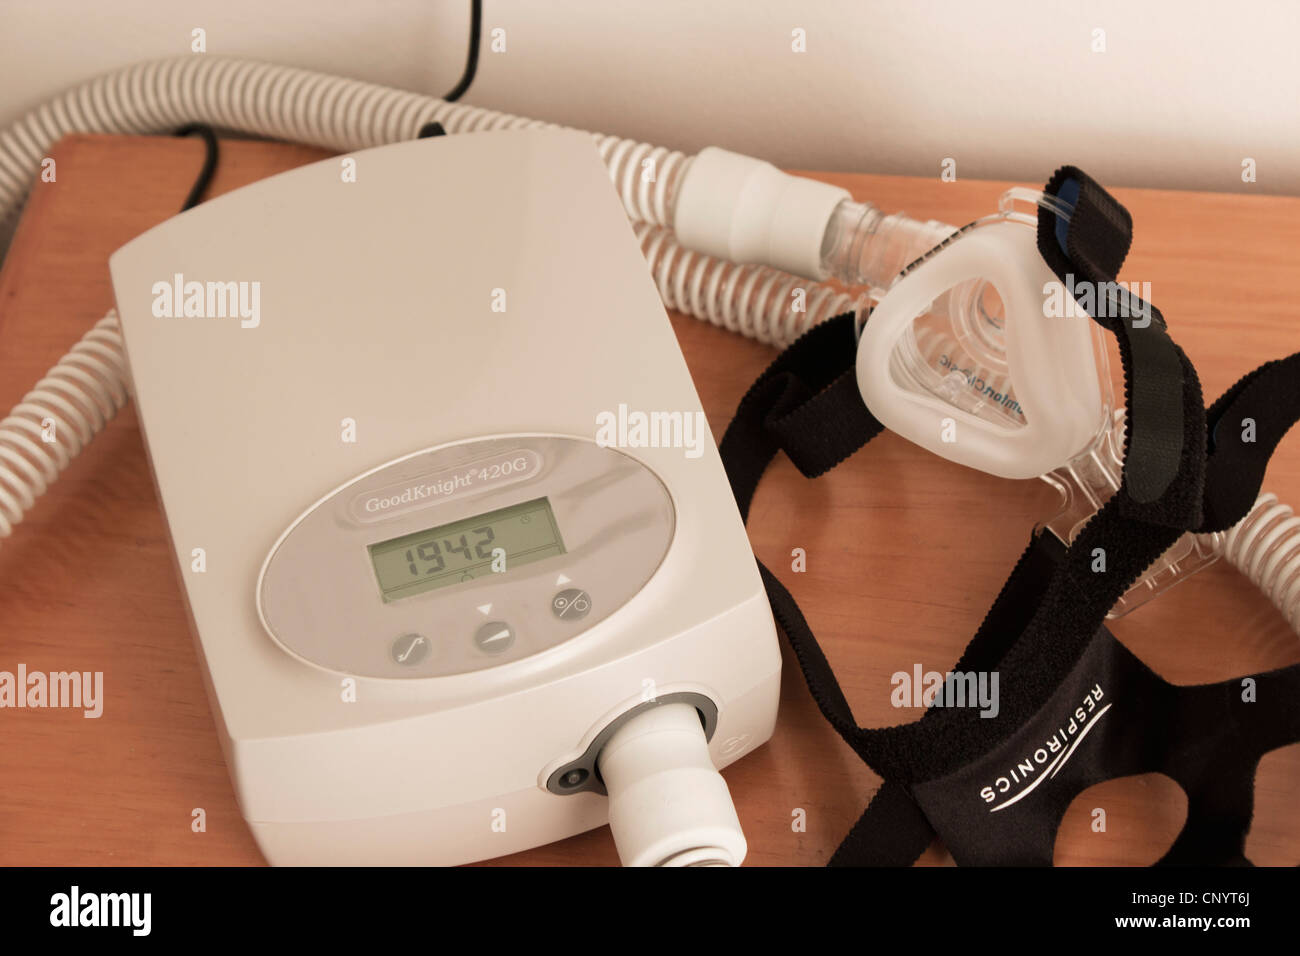 CPAP-Maske und Maschine verwendet für die Behandlung von Schlafapnoe. Stockfoto